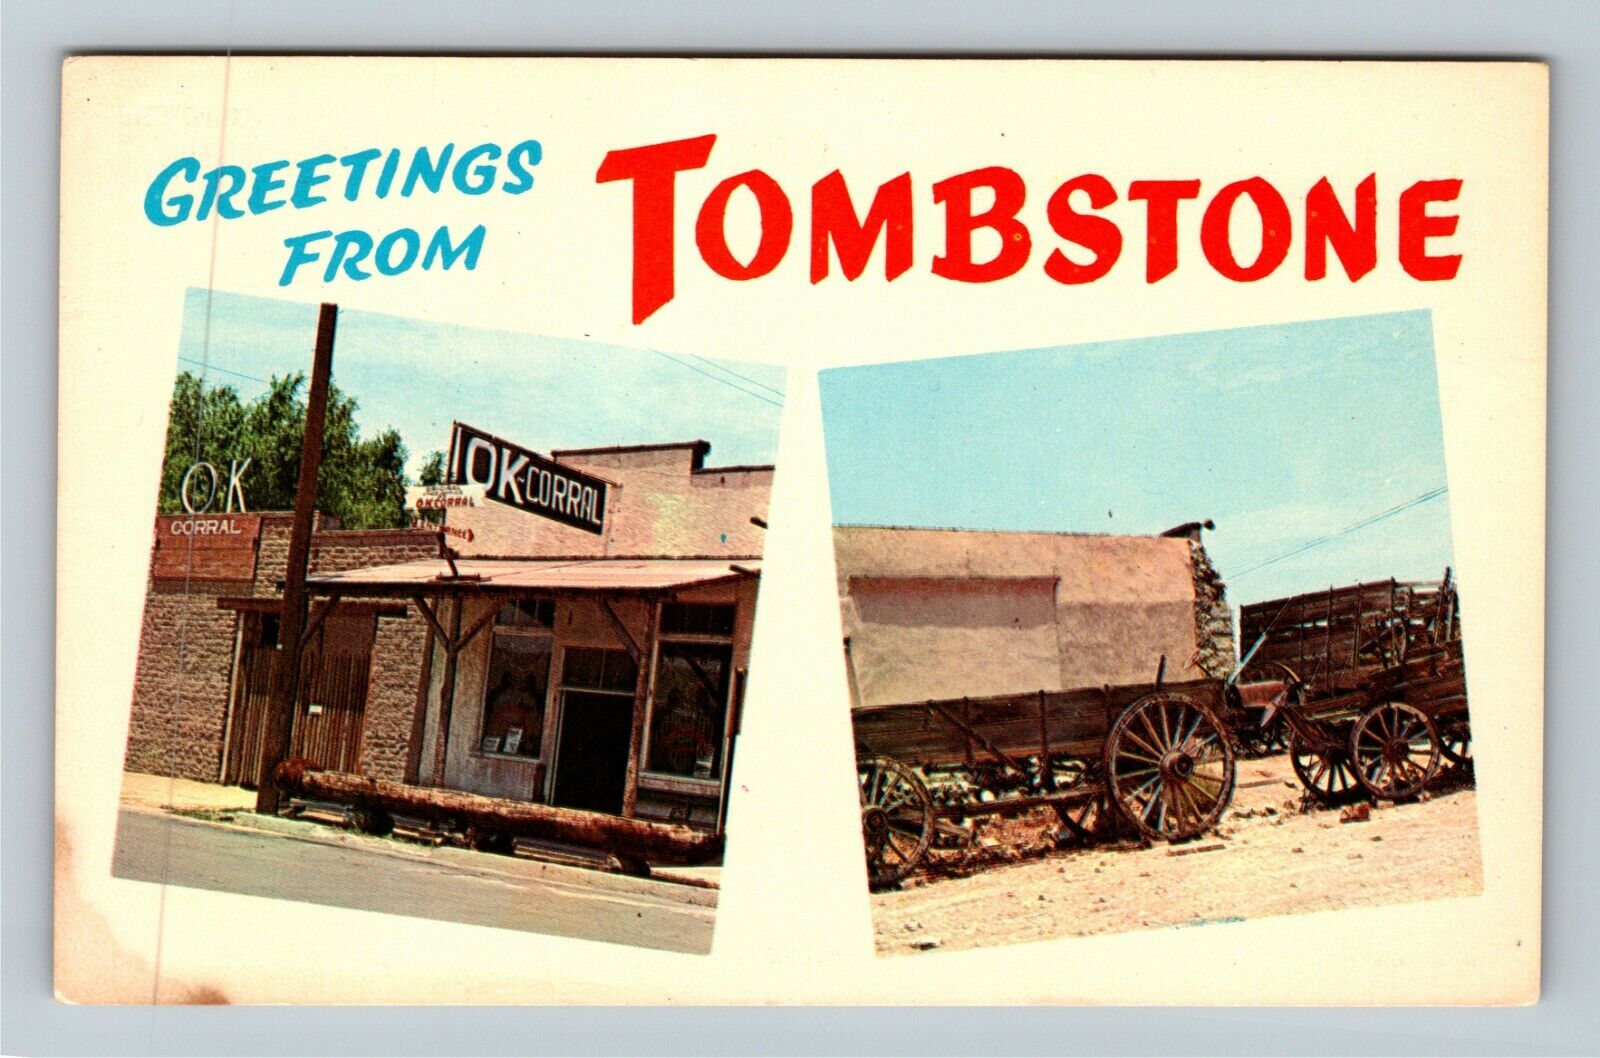 Tombstone AZ-Arizona, Greetings, OK Corral, Wagon, Antique Vintage Postcard